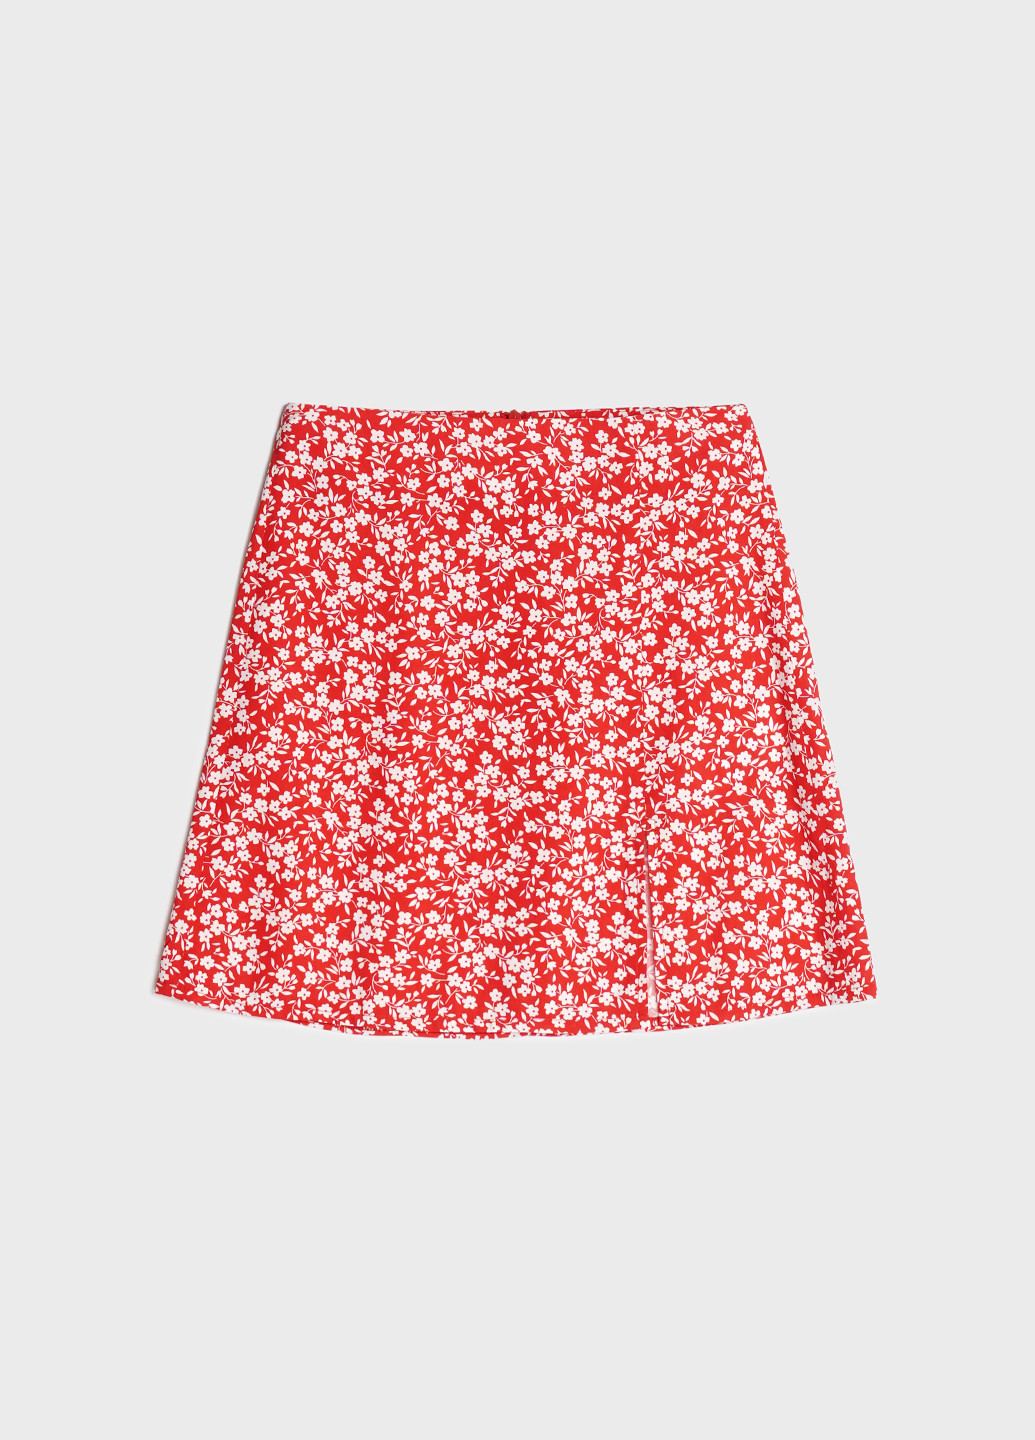 Красная кэжуал цветочной расцветки юбка KASTA design а-силуэта (трапеция)